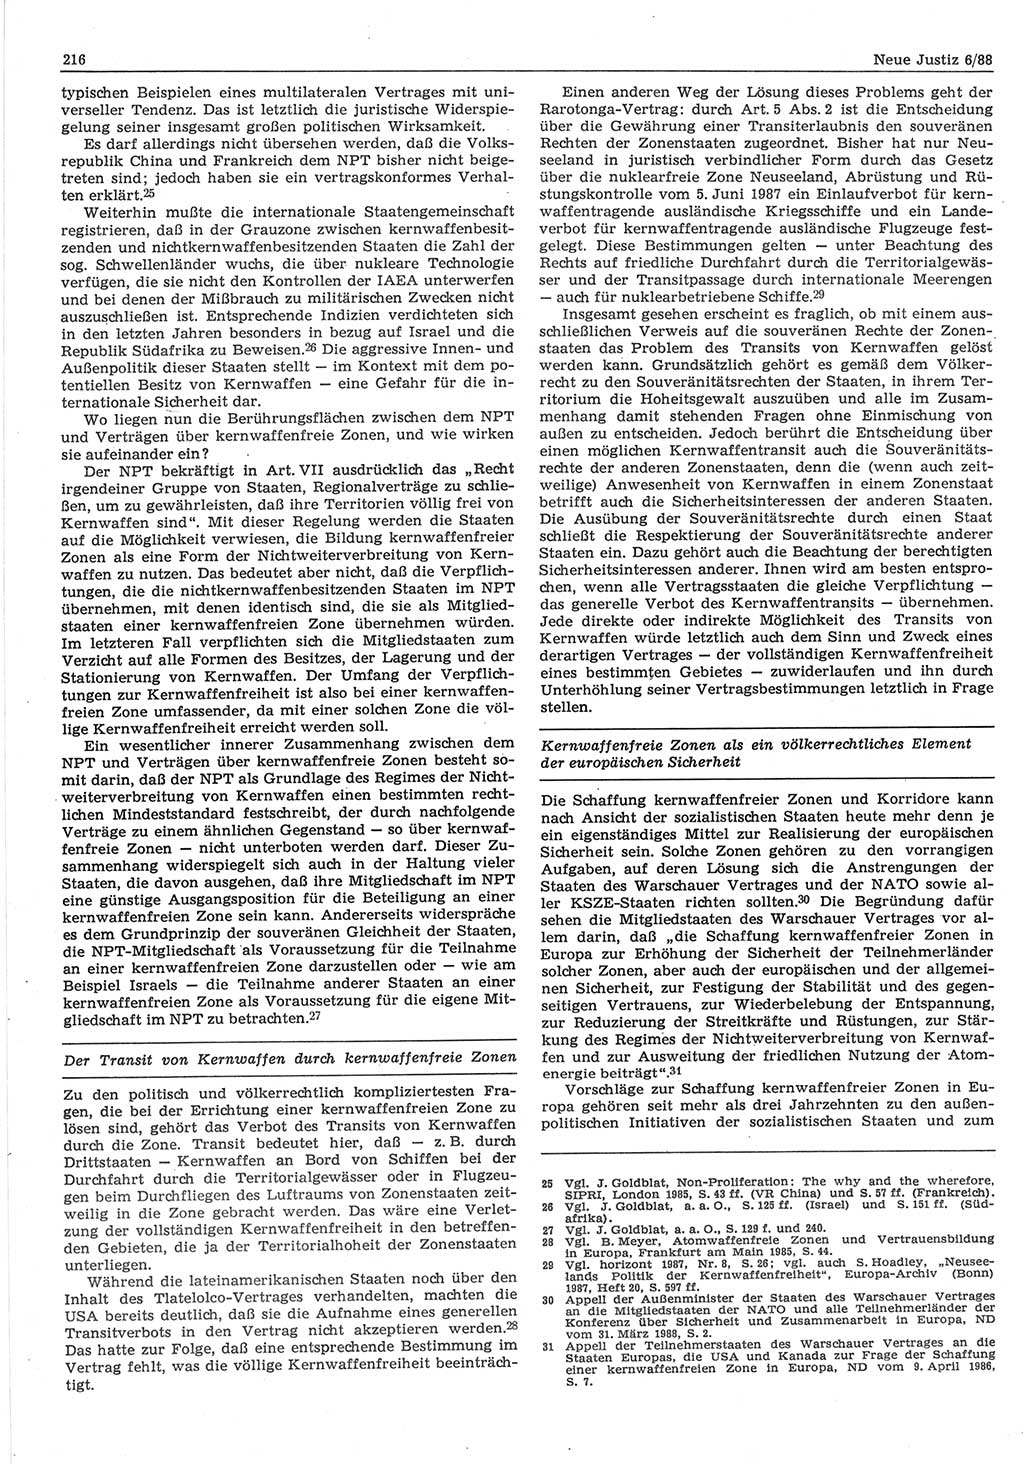 Neue Justiz (NJ), Zeitschrift für sozialistisches Recht und Gesetzlichkeit [Deutsche Demokratische Republik (DDR)], 42. Jahrgang 1988, Seite 216 (NJ DDR 1988, S. 216)